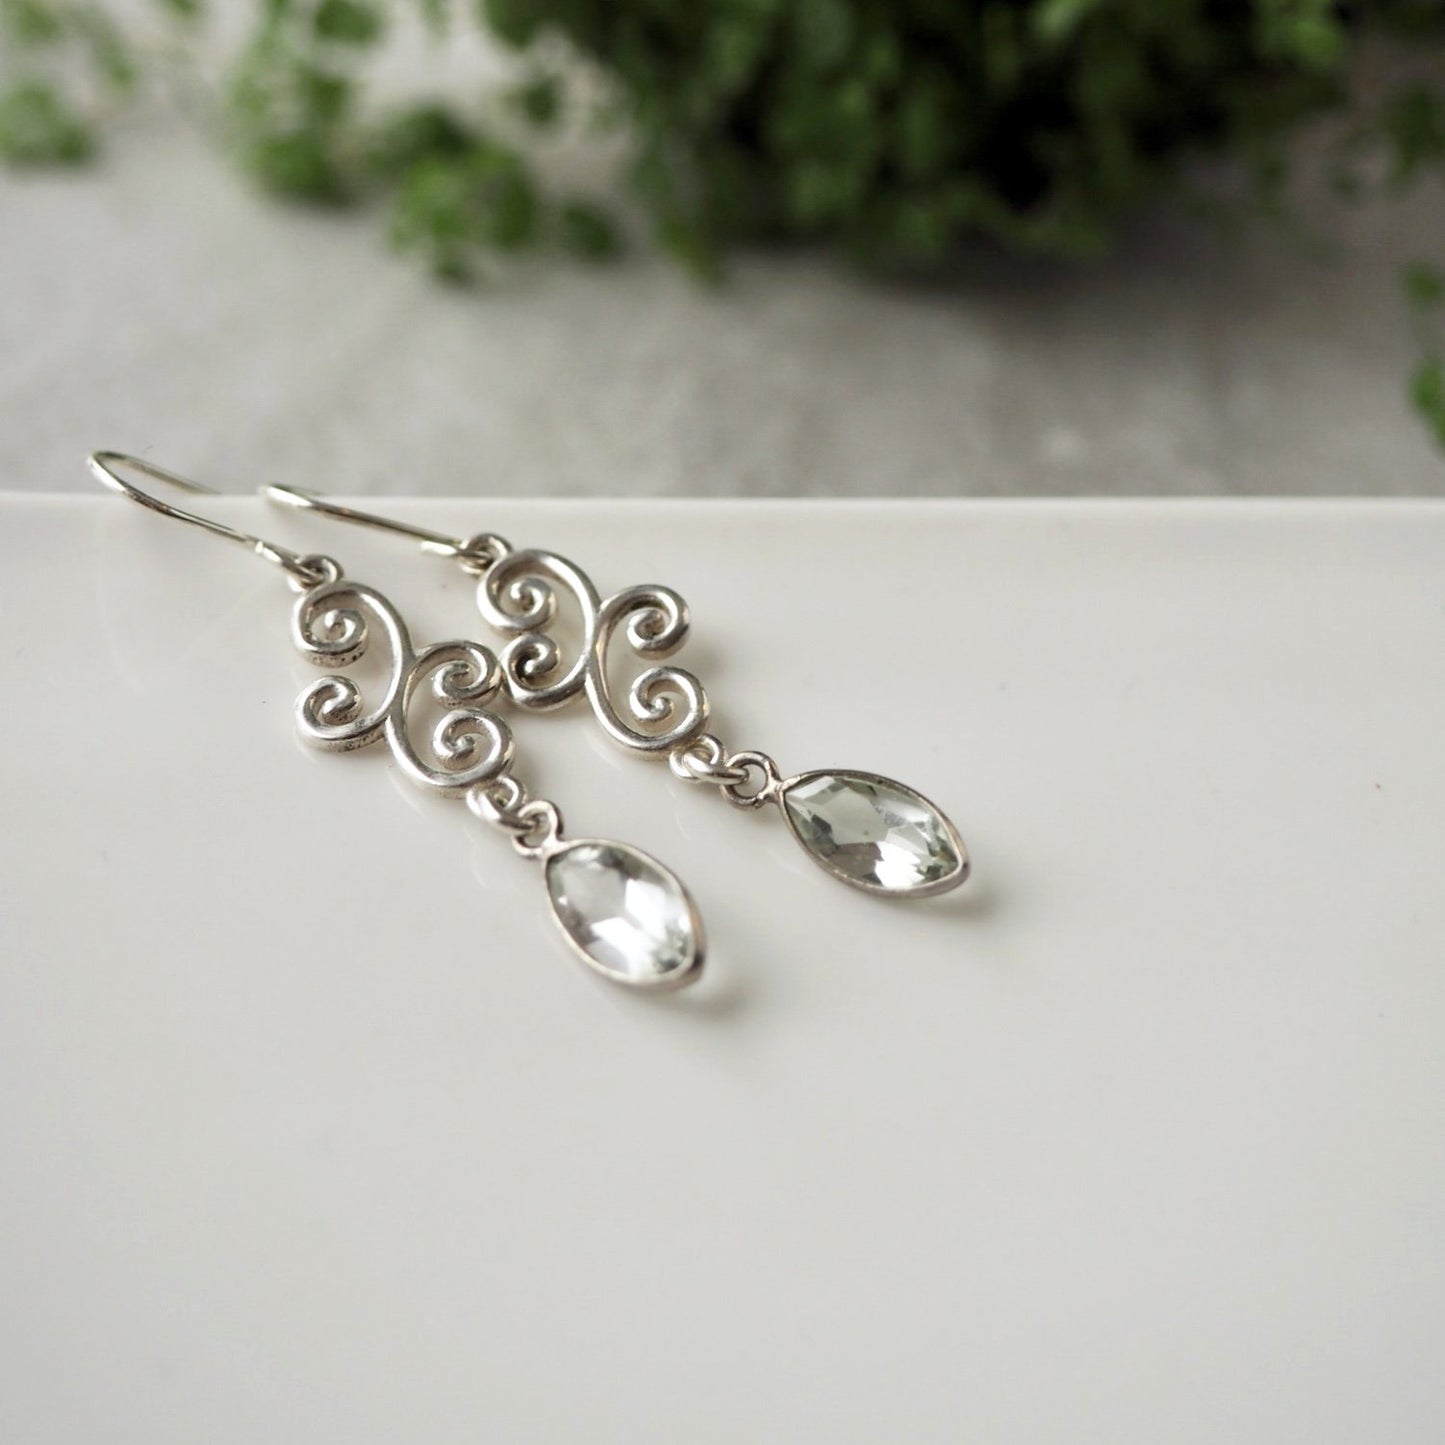 Green Amethyst Sterling silver earrings by Nancy Wallis Designs